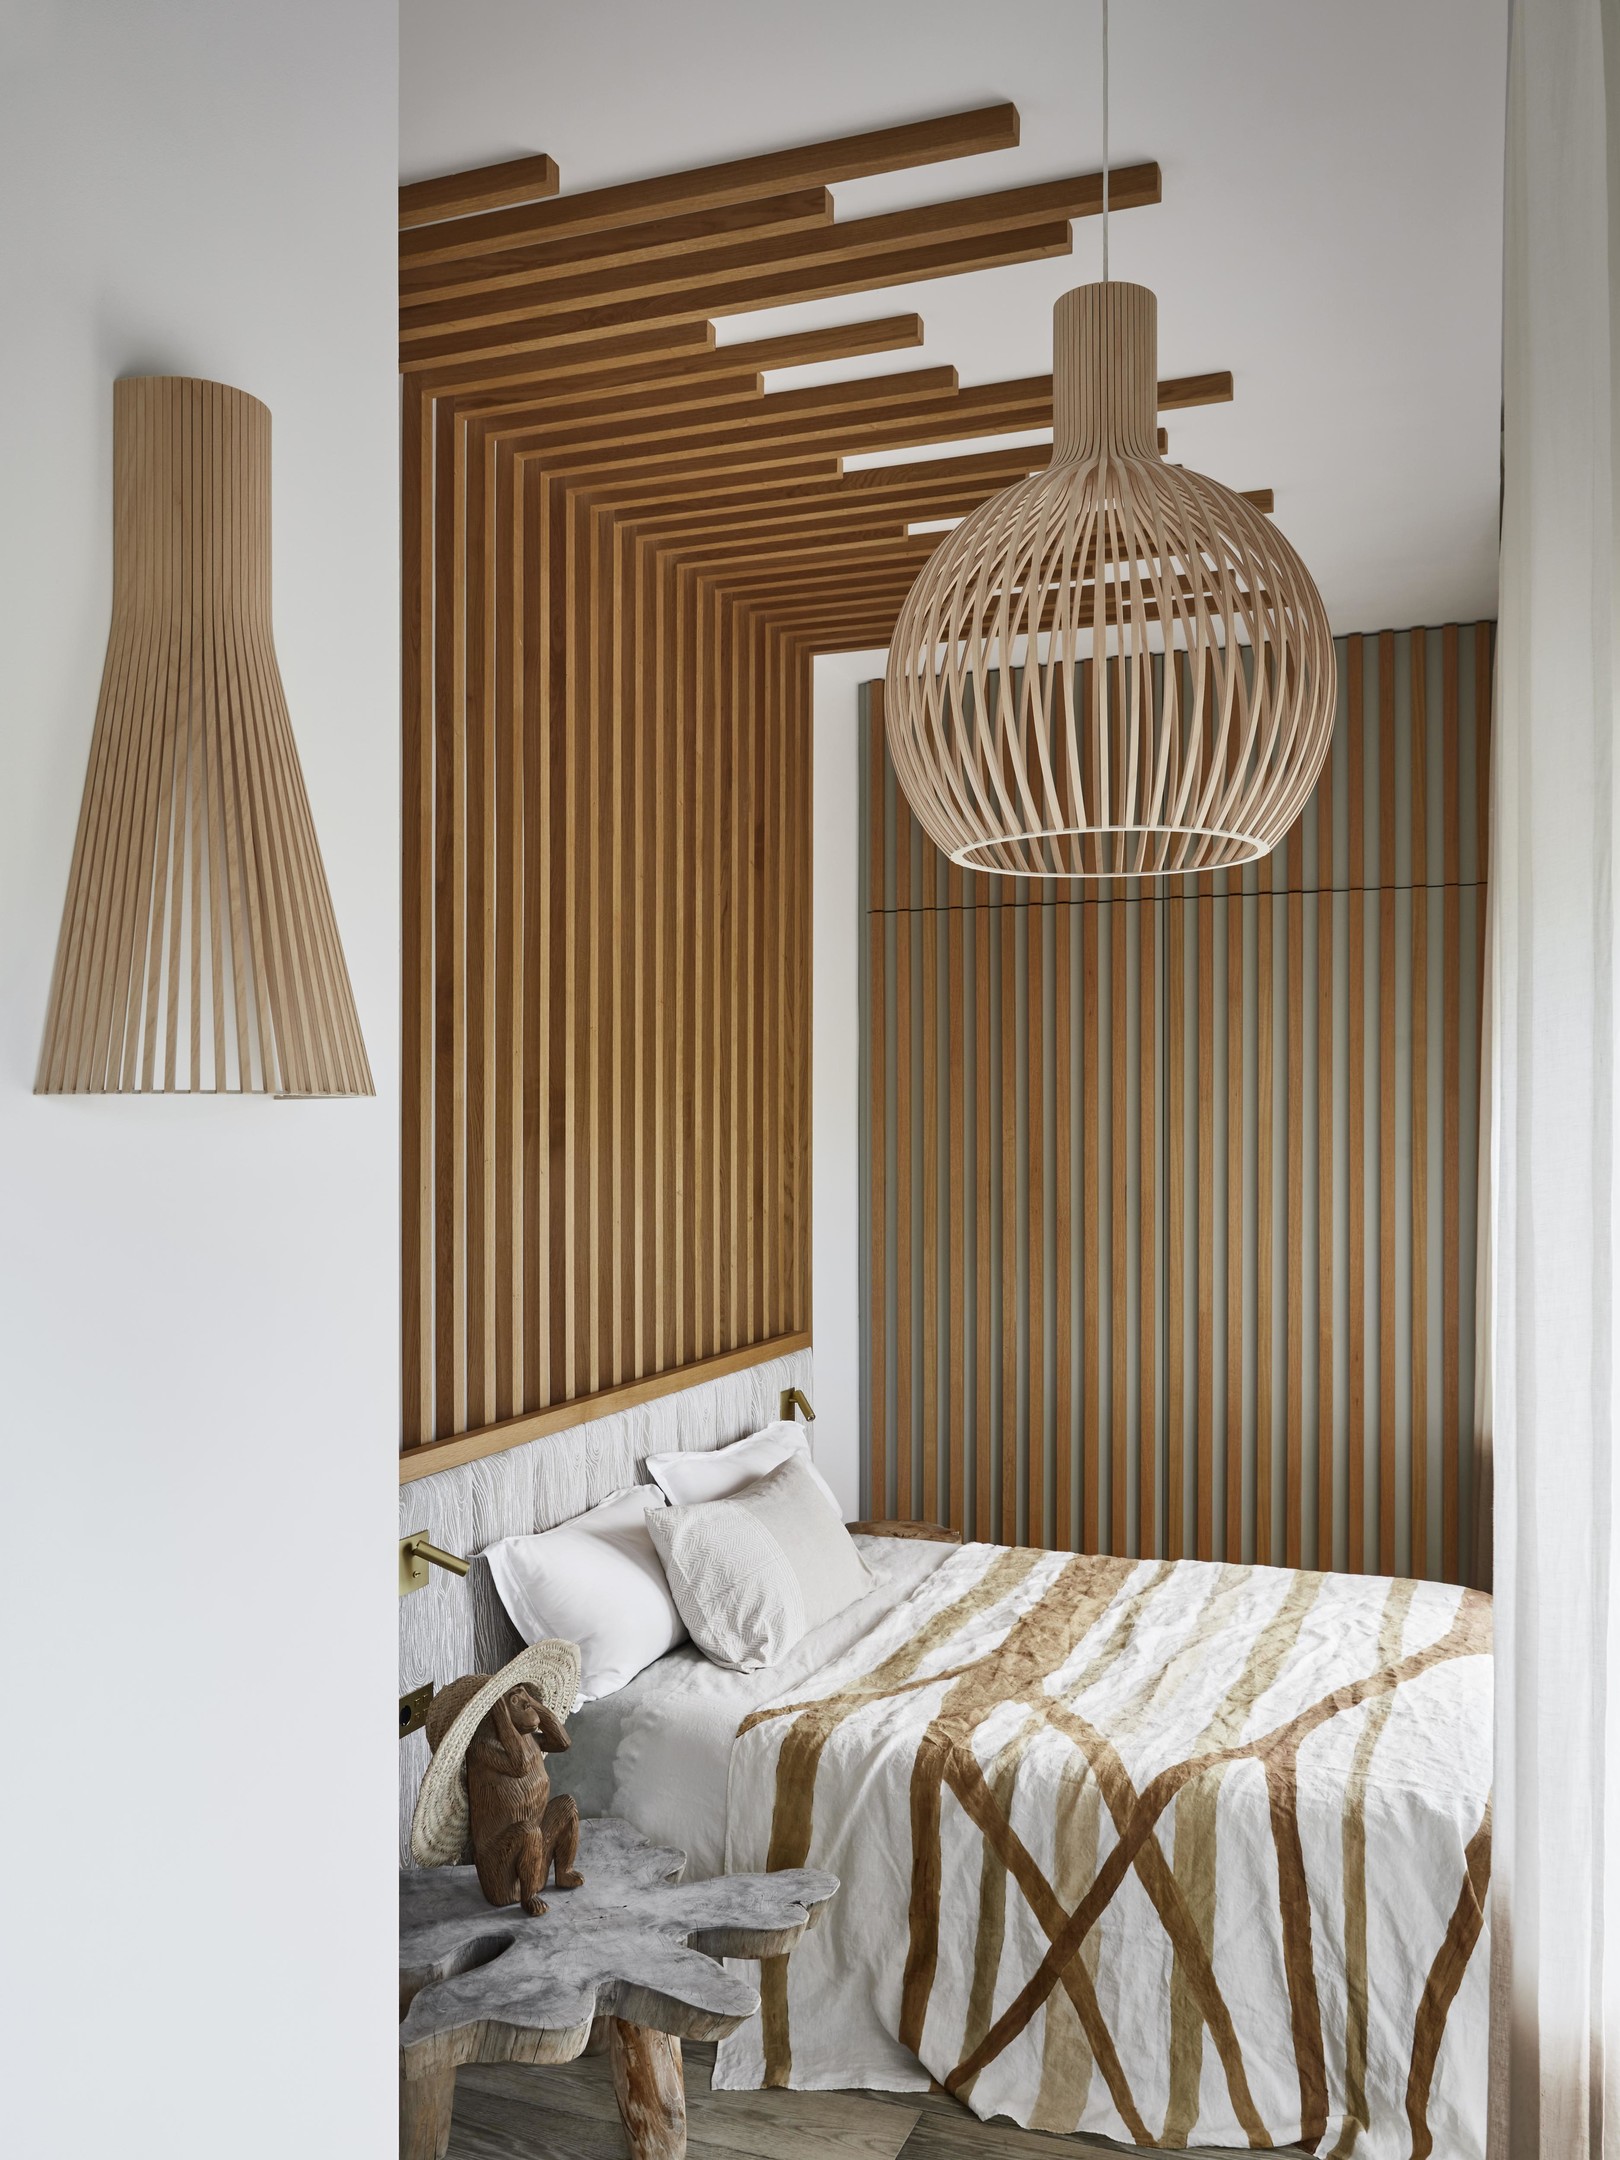 Lam gỗ xuất hiện để ốp trần và 2 mặt tường, kết hợp đèn thả trần và đèn ngủ cũng bằng chất liệu gỗ mộc mạc.